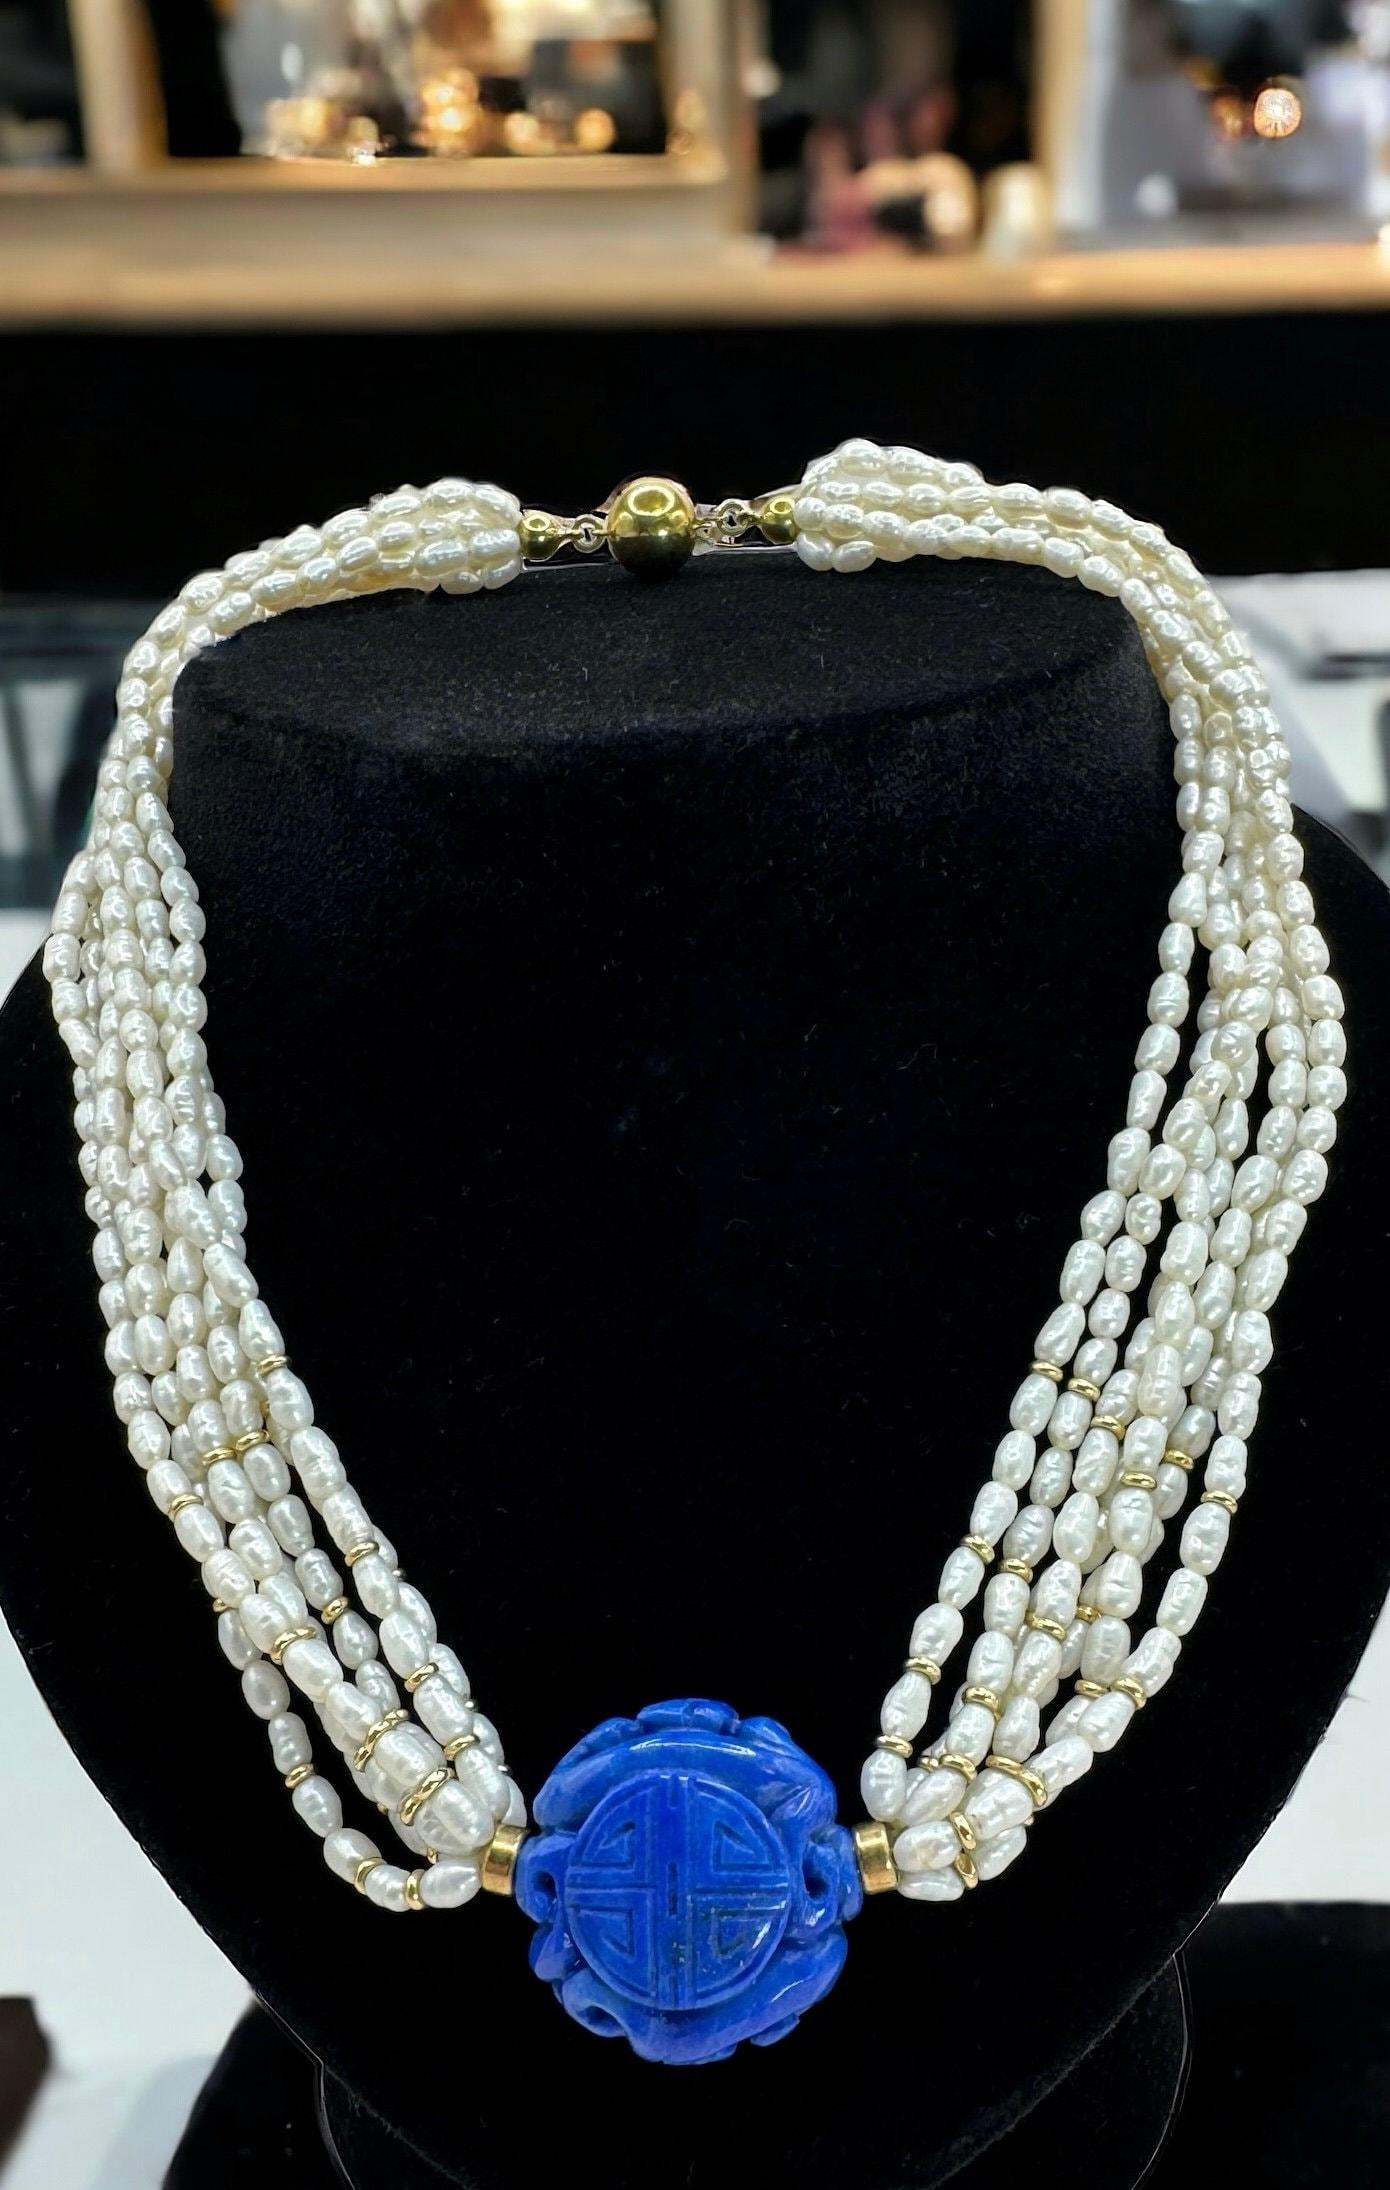 Dévoilez la splendeur d'antan avec ce collier vintage, enfilé de délicates perles de riz d'eau douce. 

Cette pièce pèse 53,2 grammes et s'étend sur 40 cm, culminant dans une majestueuse pièce centrale en lapis-lazuli sculpté. 

Le collier est